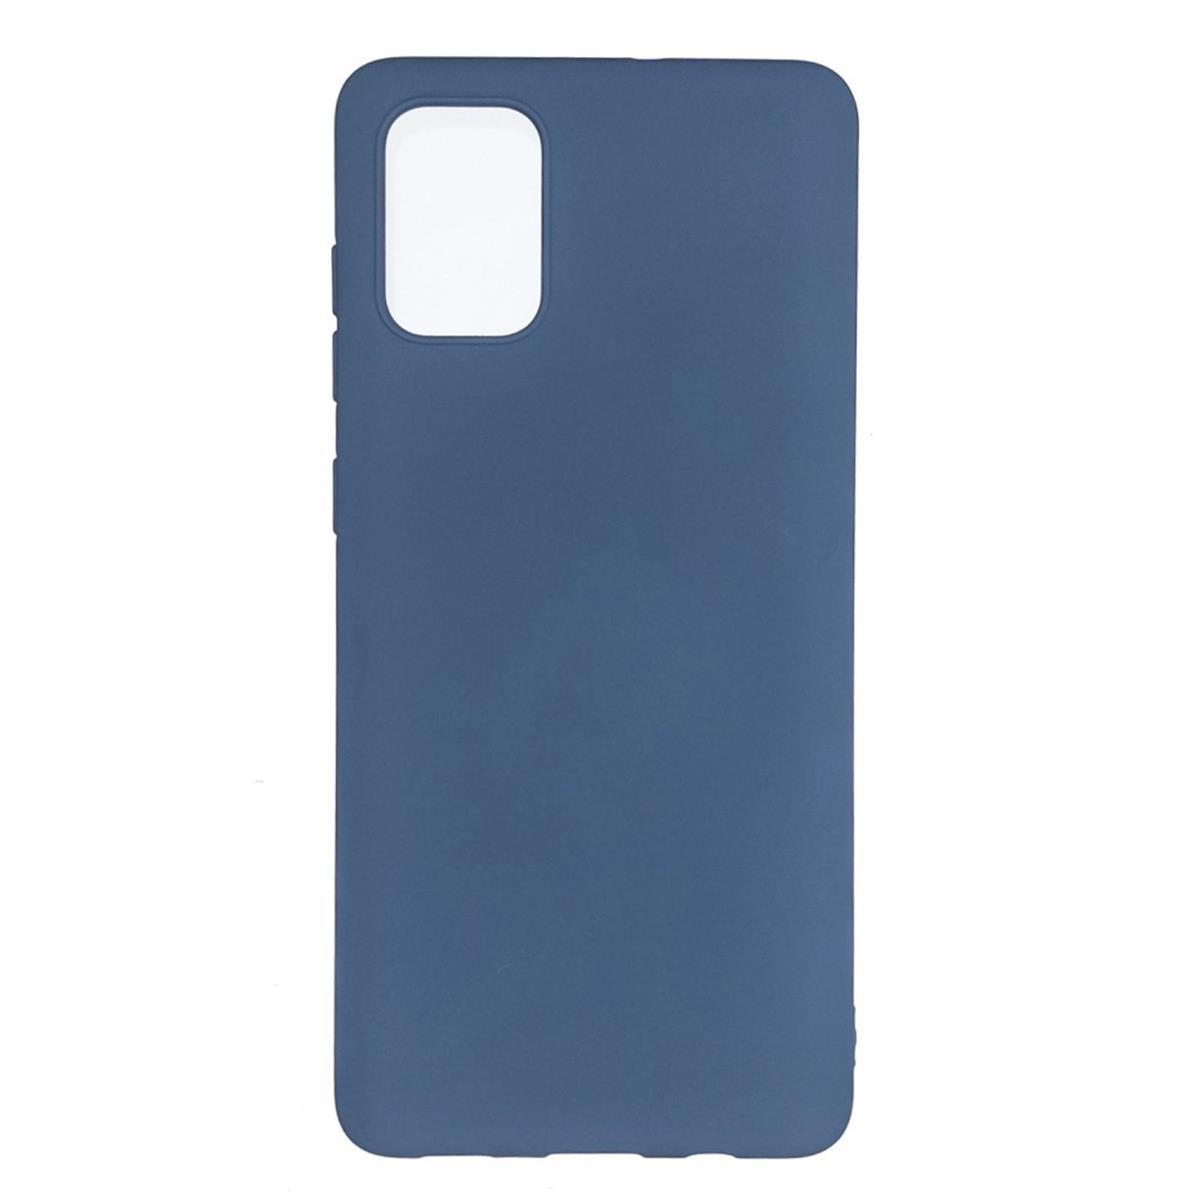 Handycase Backcover, 5G/A52s Blau 5G, Silikon, Samsung, Galaxy A52/A52 aus COVERKINGZ